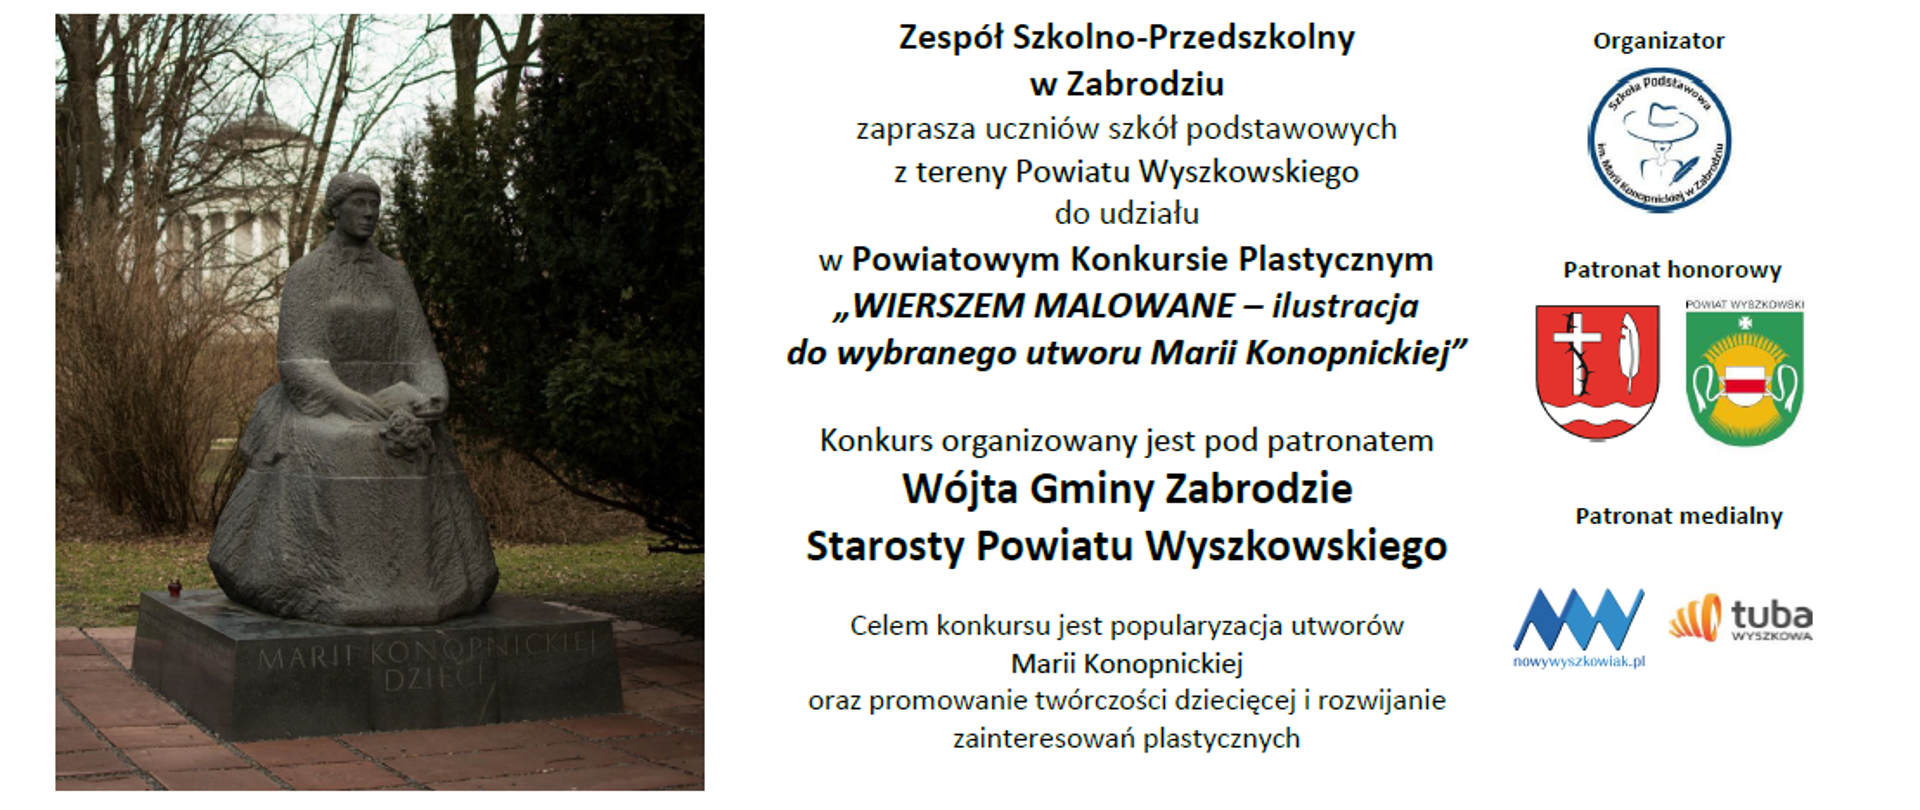 Szary pomnik siedzącej kobiety oraz informacja o konkursie plastycznym Wierszem malowane